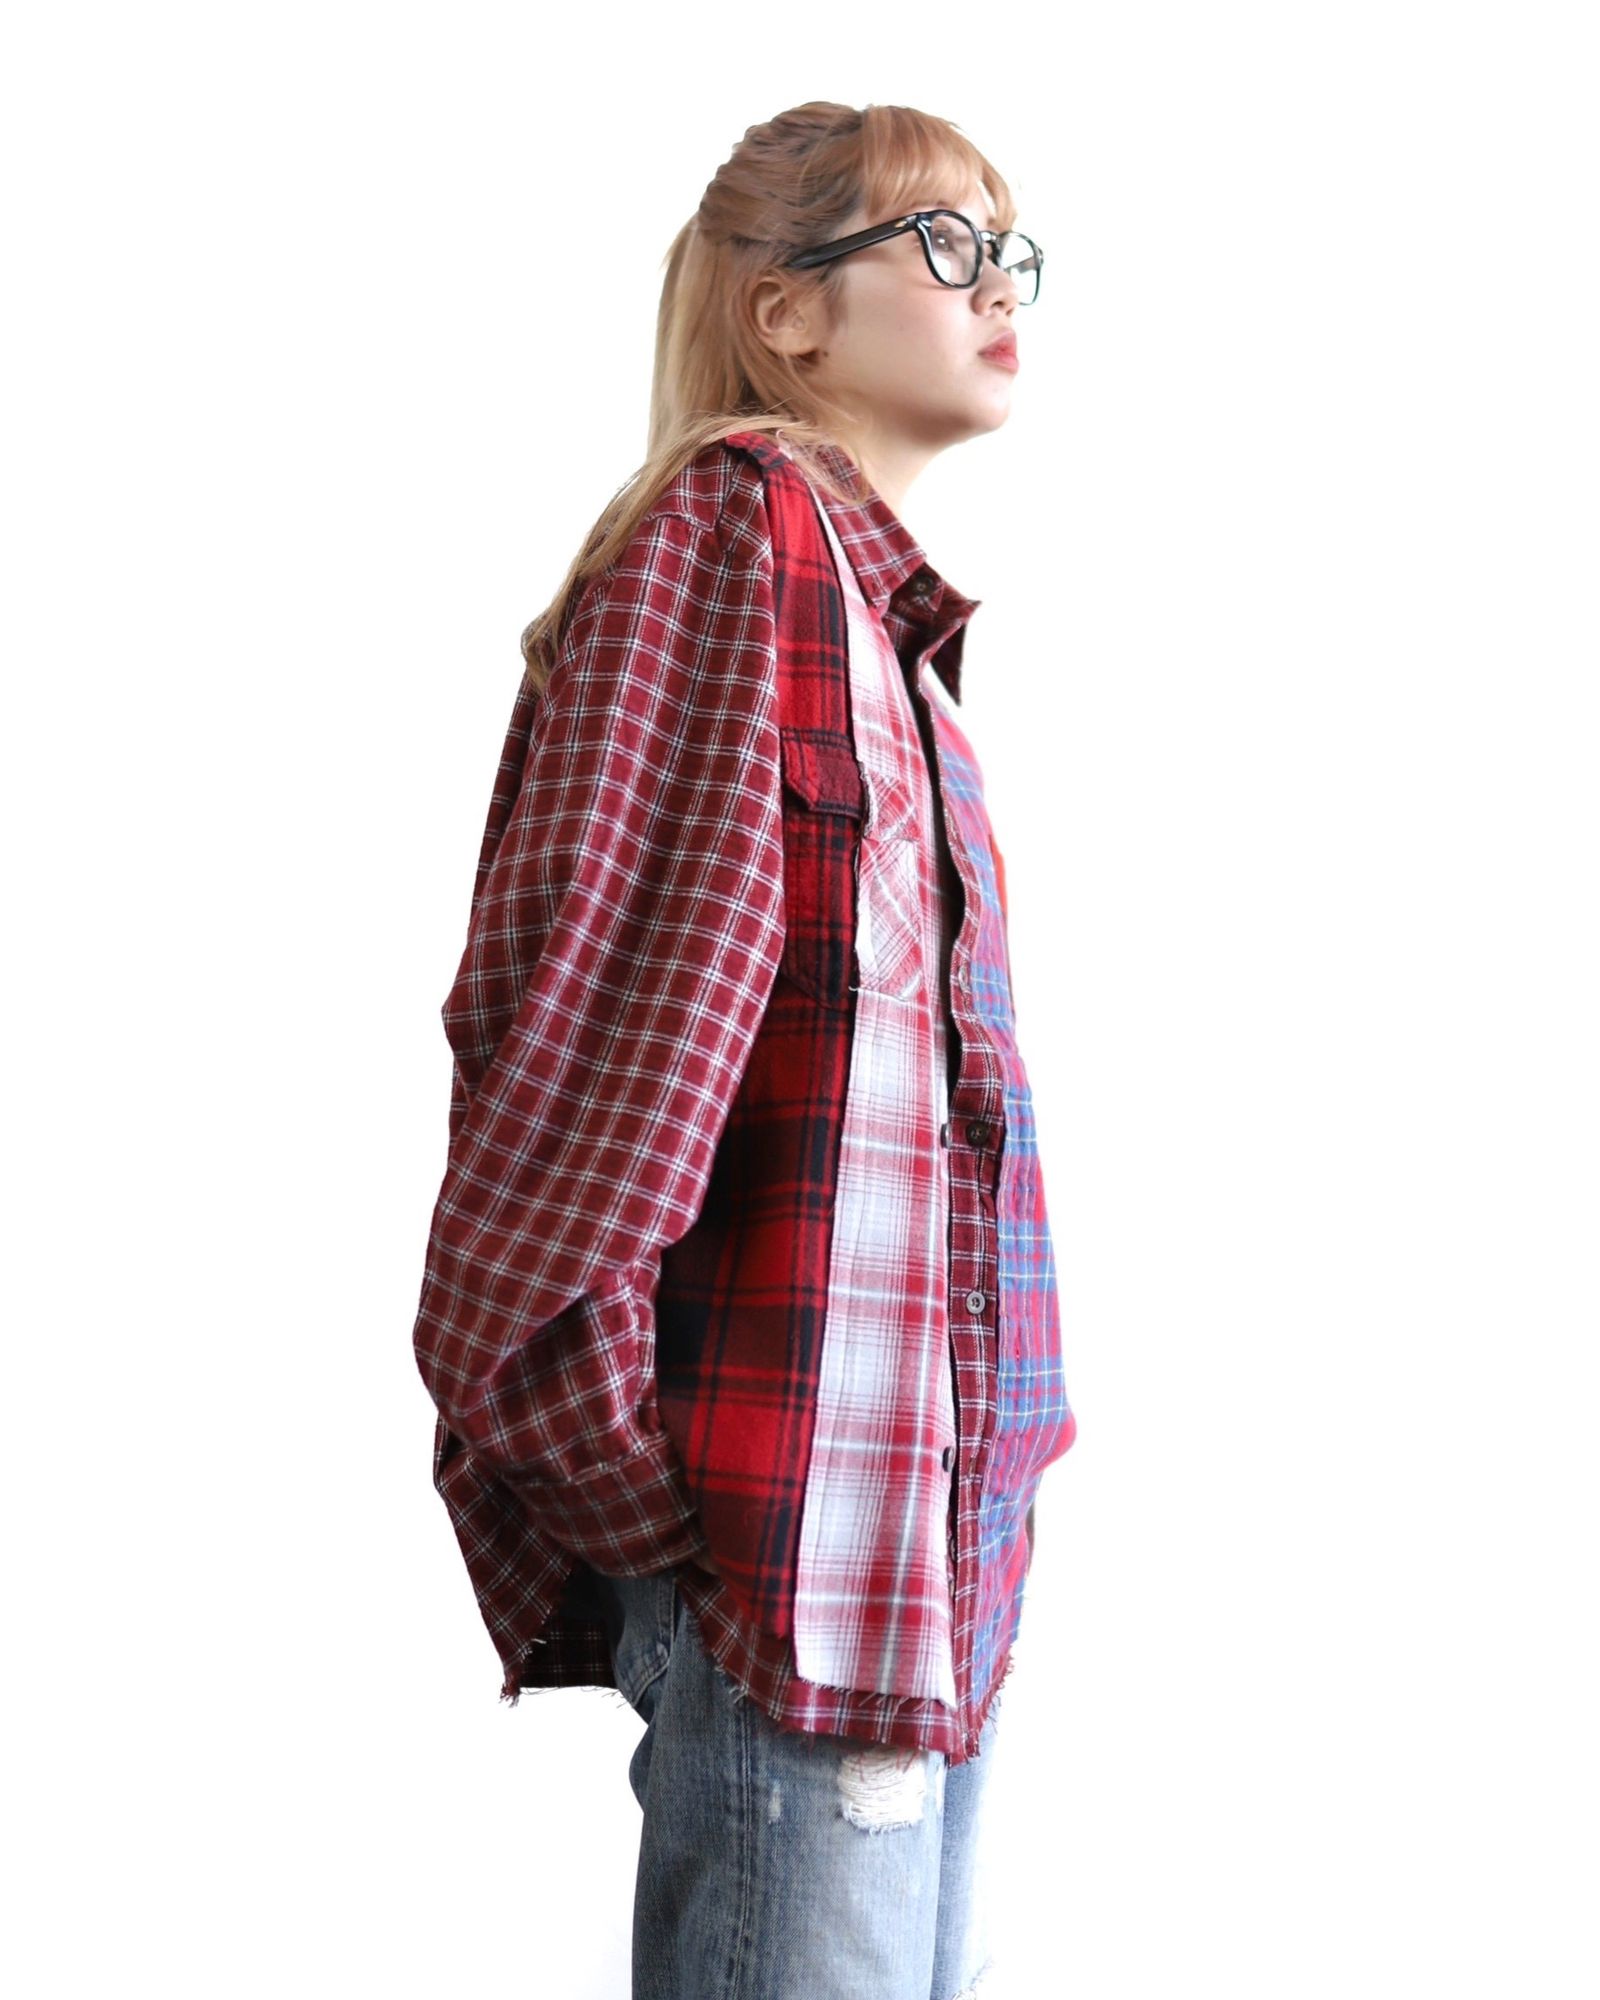 Rafu ラフ/Remake shirt/BLU-RED 初期限定ネルシャツ